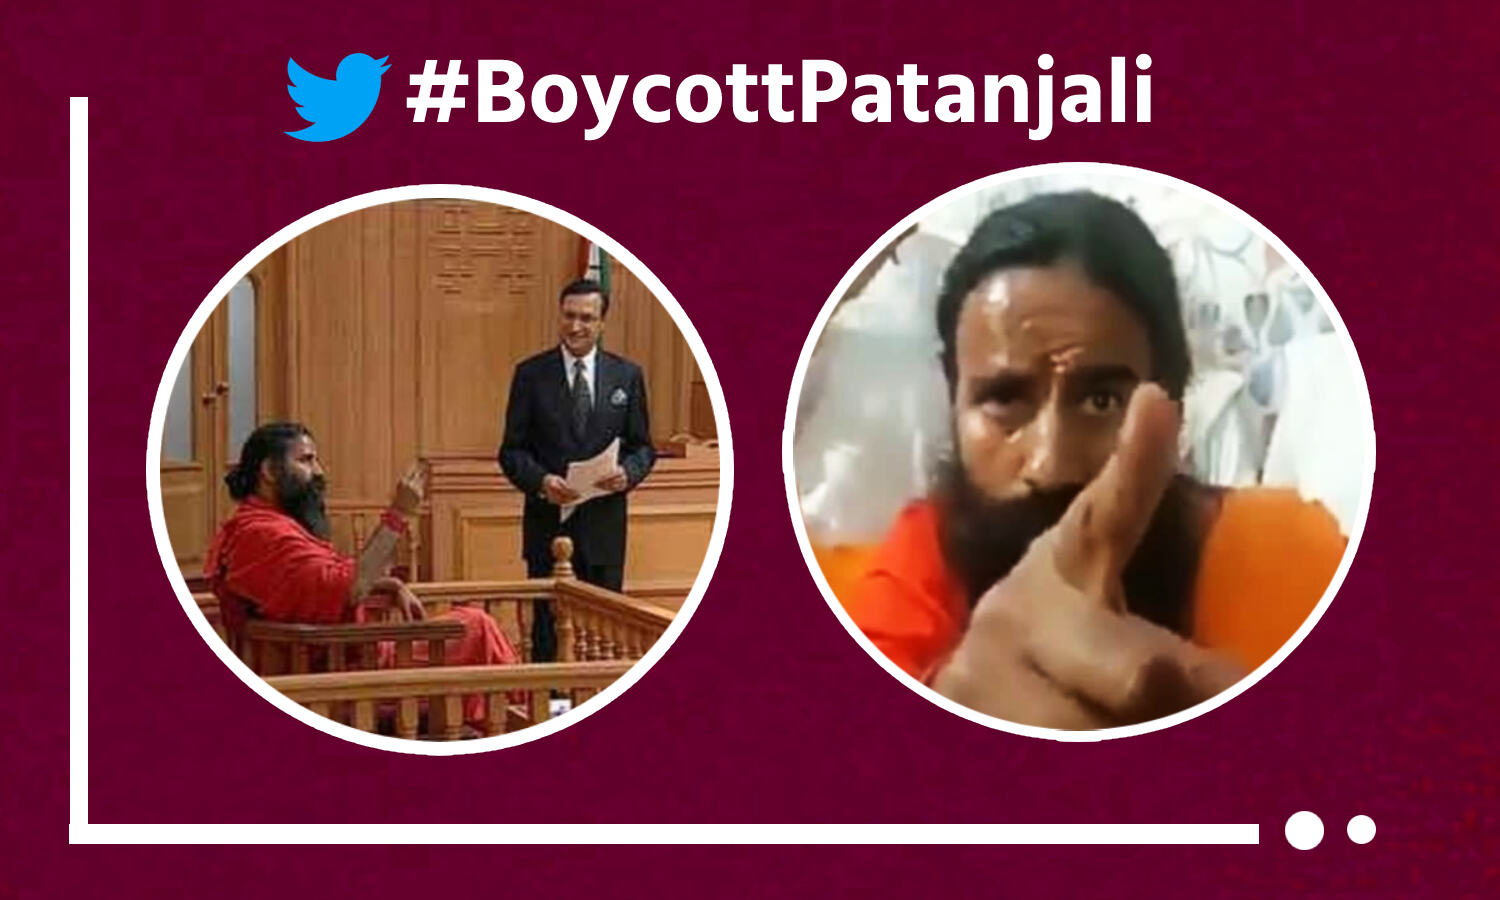 Petrol-Diesel के बढ़ते दामों पर बोलने से बचे रामदेव, पतंजलि के बहिष्कार की मांग तेज, टॉप ट्रेंड बना #BoycottPatanjali